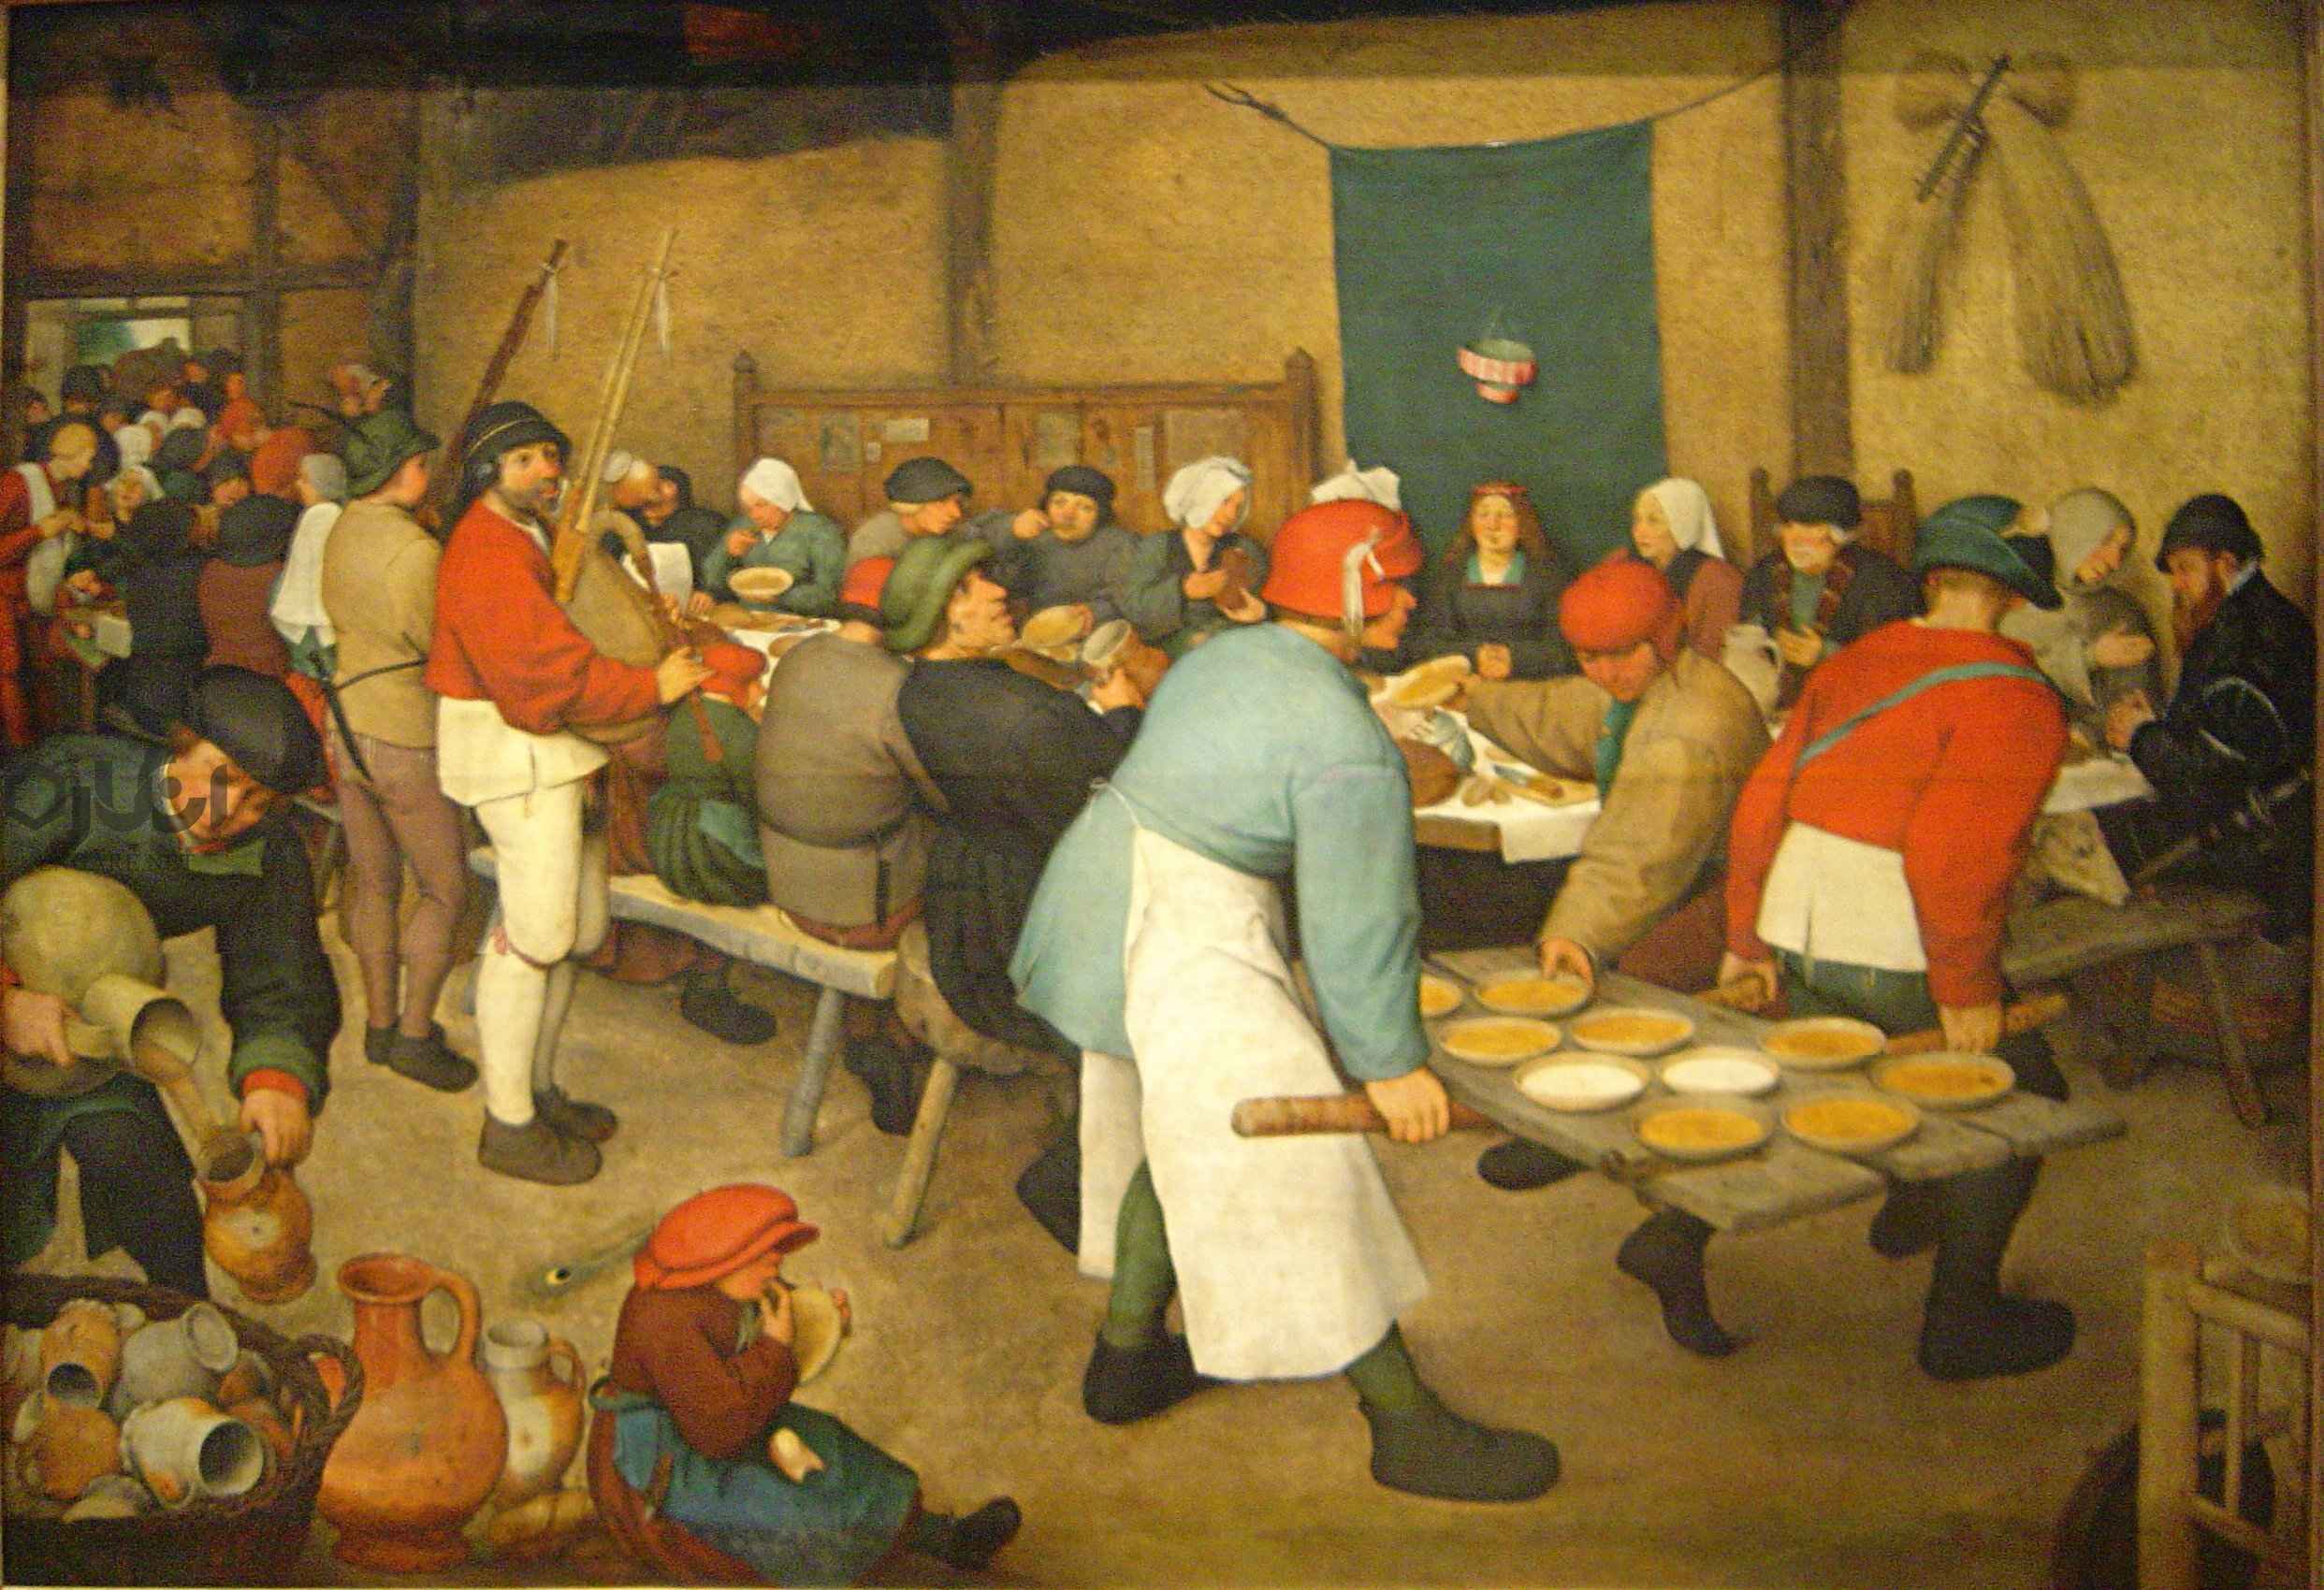 pieter bruegel - تفاوت جامعه و اجتماع - فردیناند تونیس, علوم اجتماعی, حامعه شناسی, جامعه, اجتماع, Society, Gesellschaft, Gemeeinschaft, Community